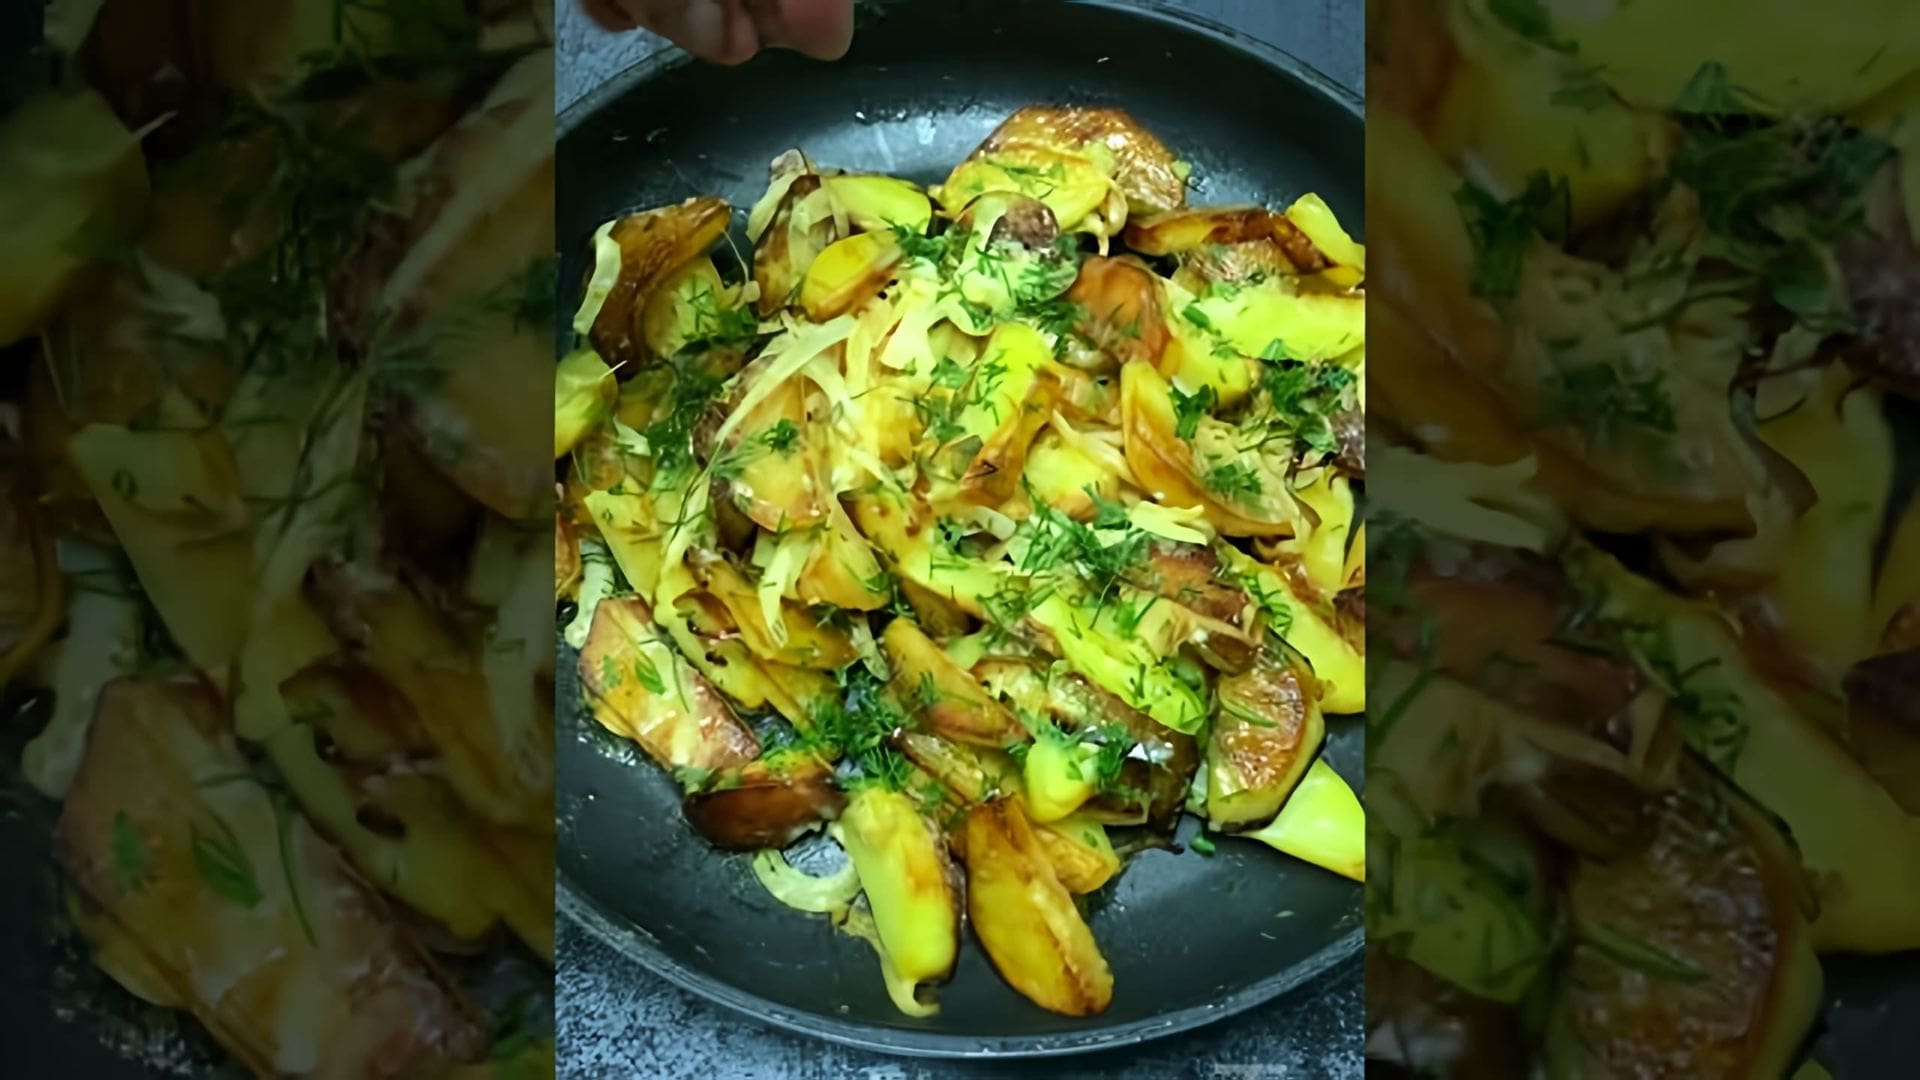 В этом видео демонстрируется рецепт приготовления жареной картошки со сметаной